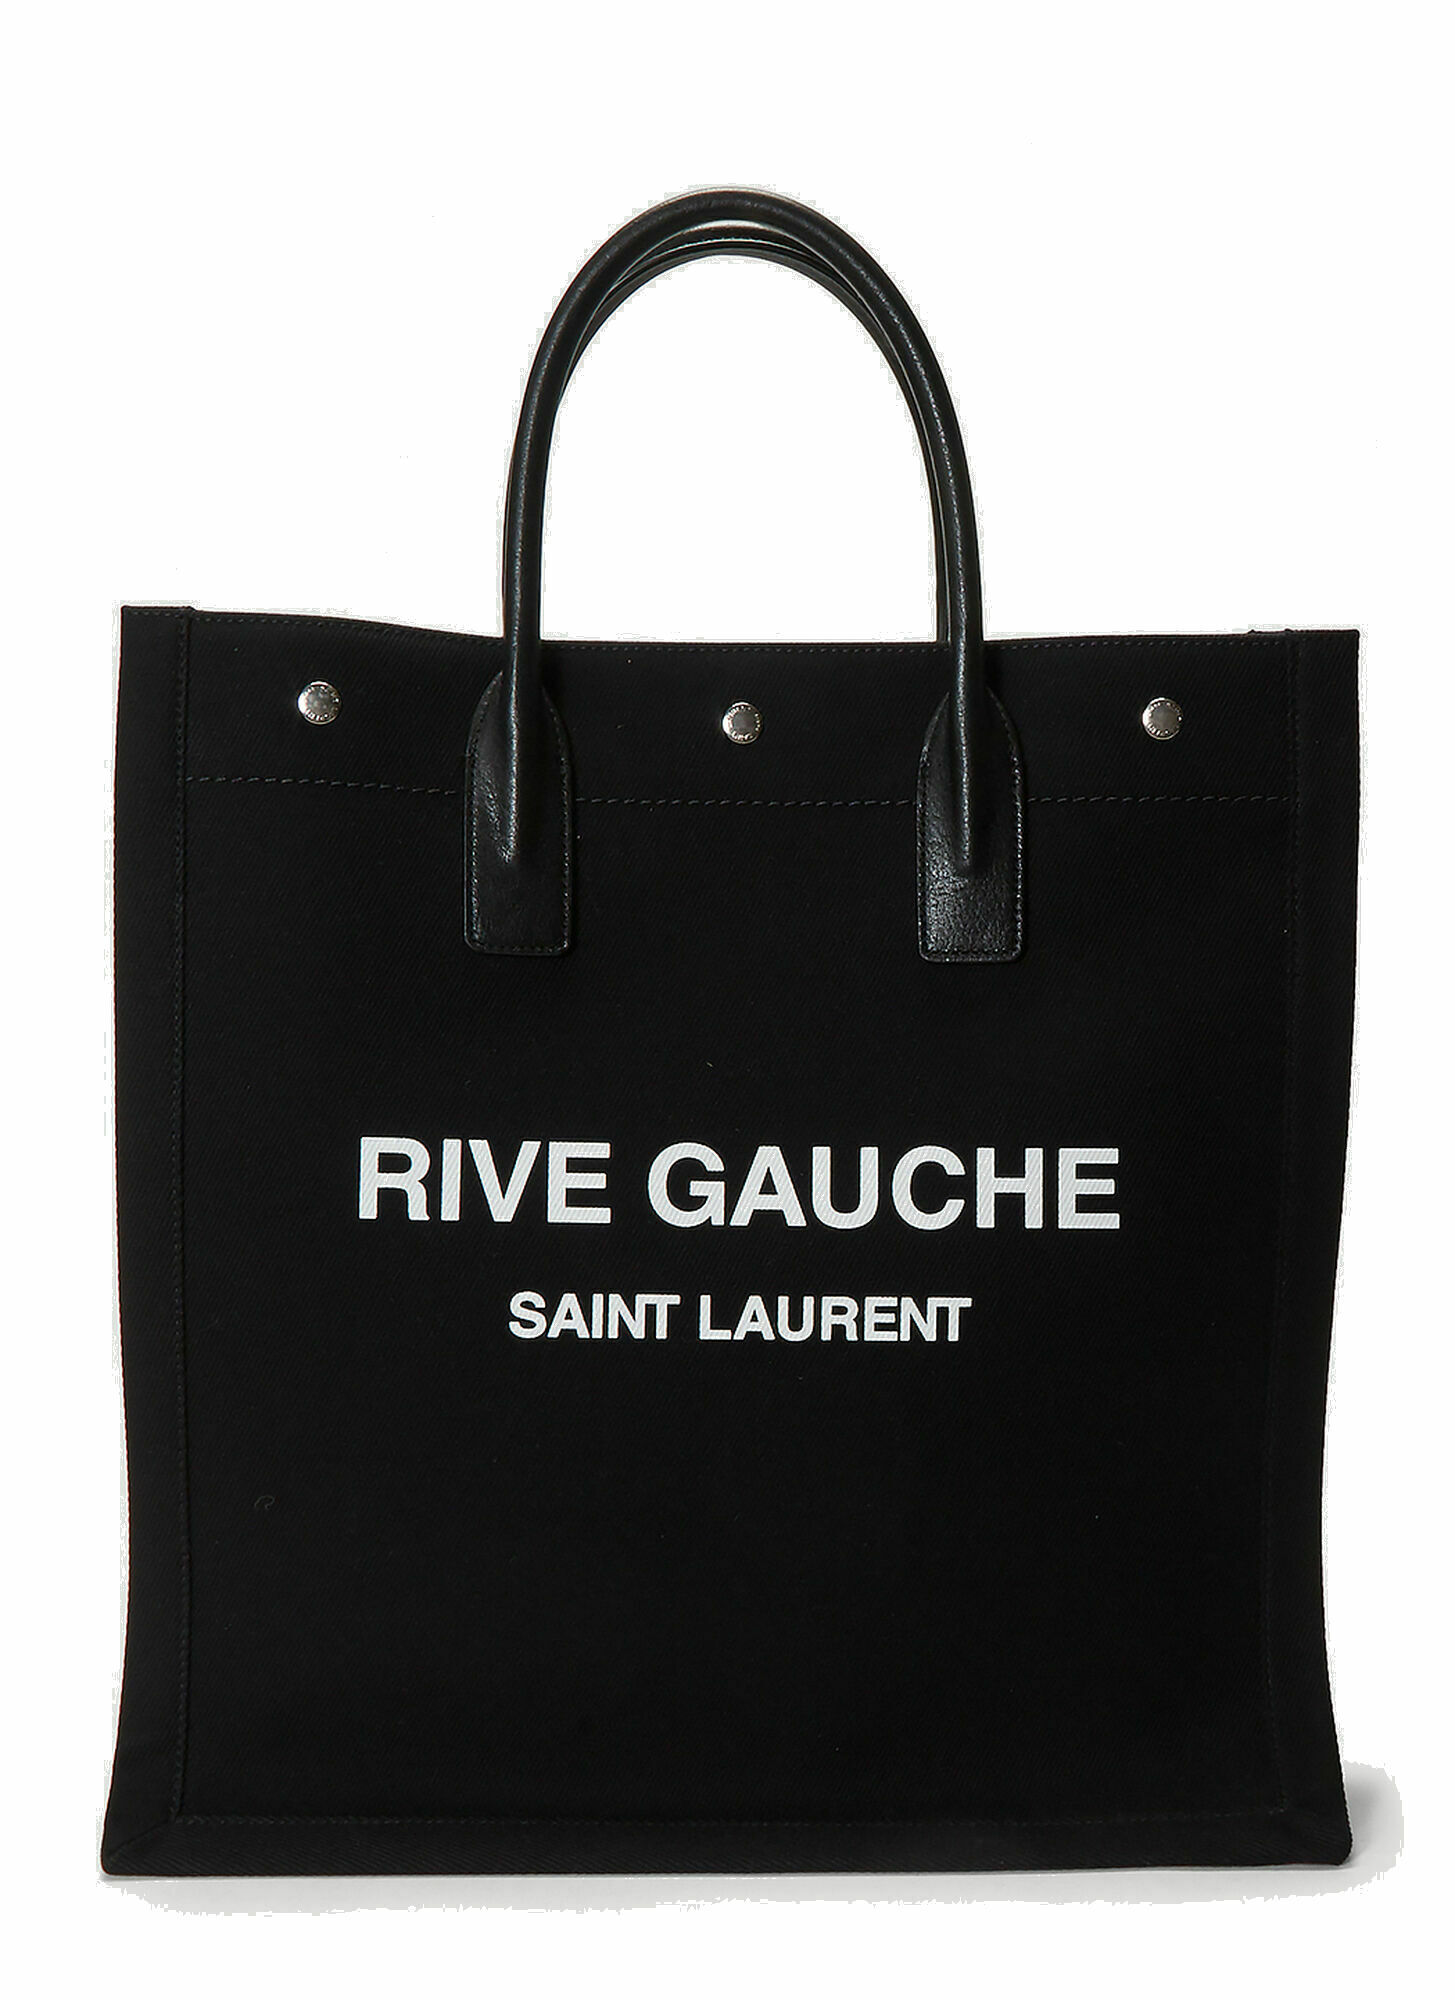 Photo: Rive Gauche N/S Tote Bag in Black